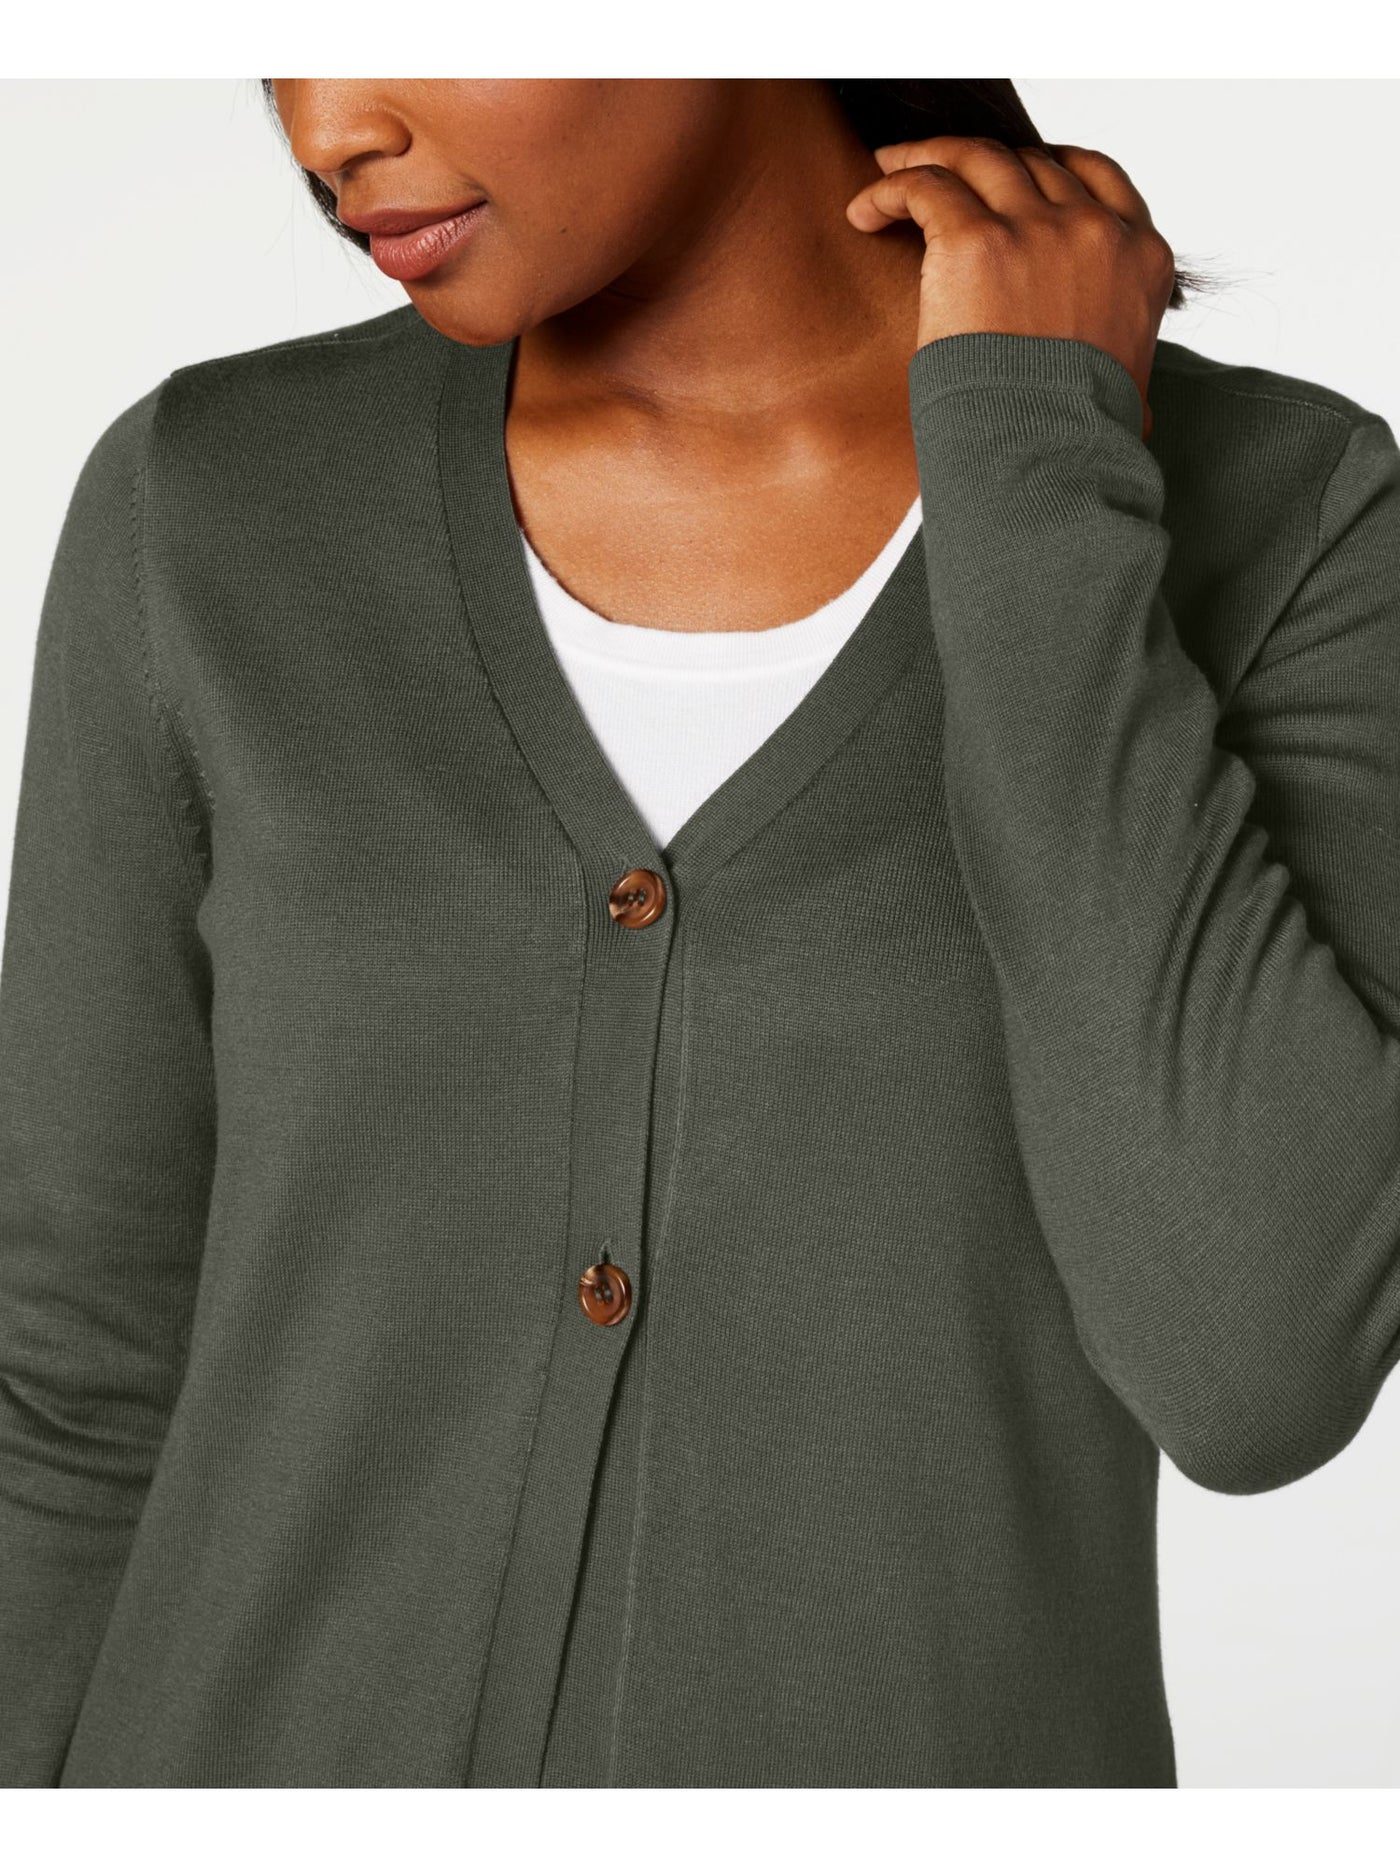 KAREN SCOTT Womens Gray Heather Long Sleeve V Neck Sweater XL